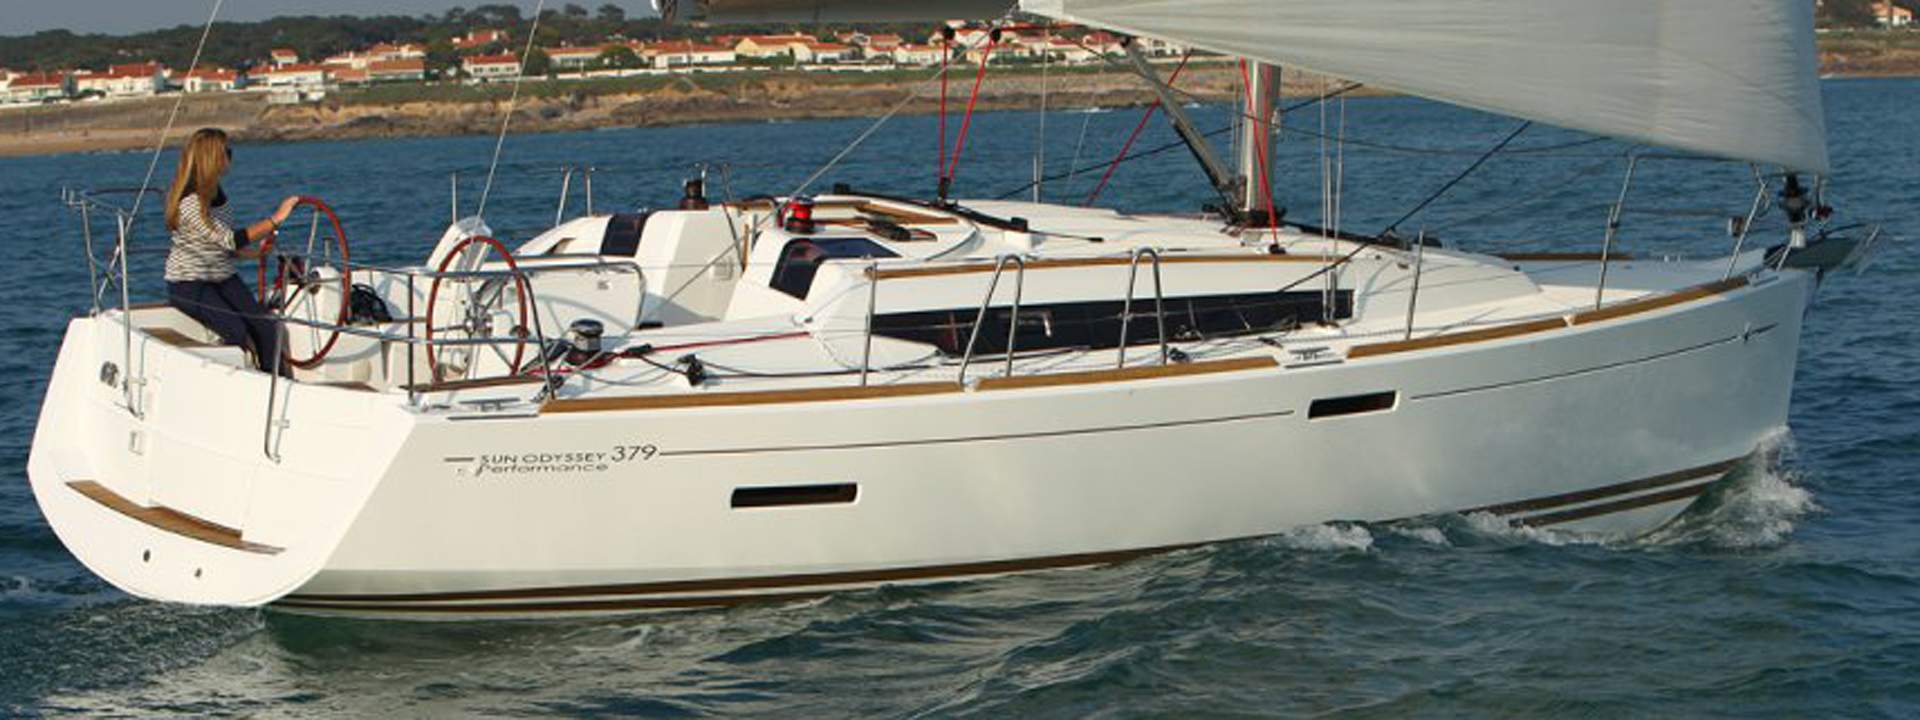 Segelboot Sun Odyssey 379 KS